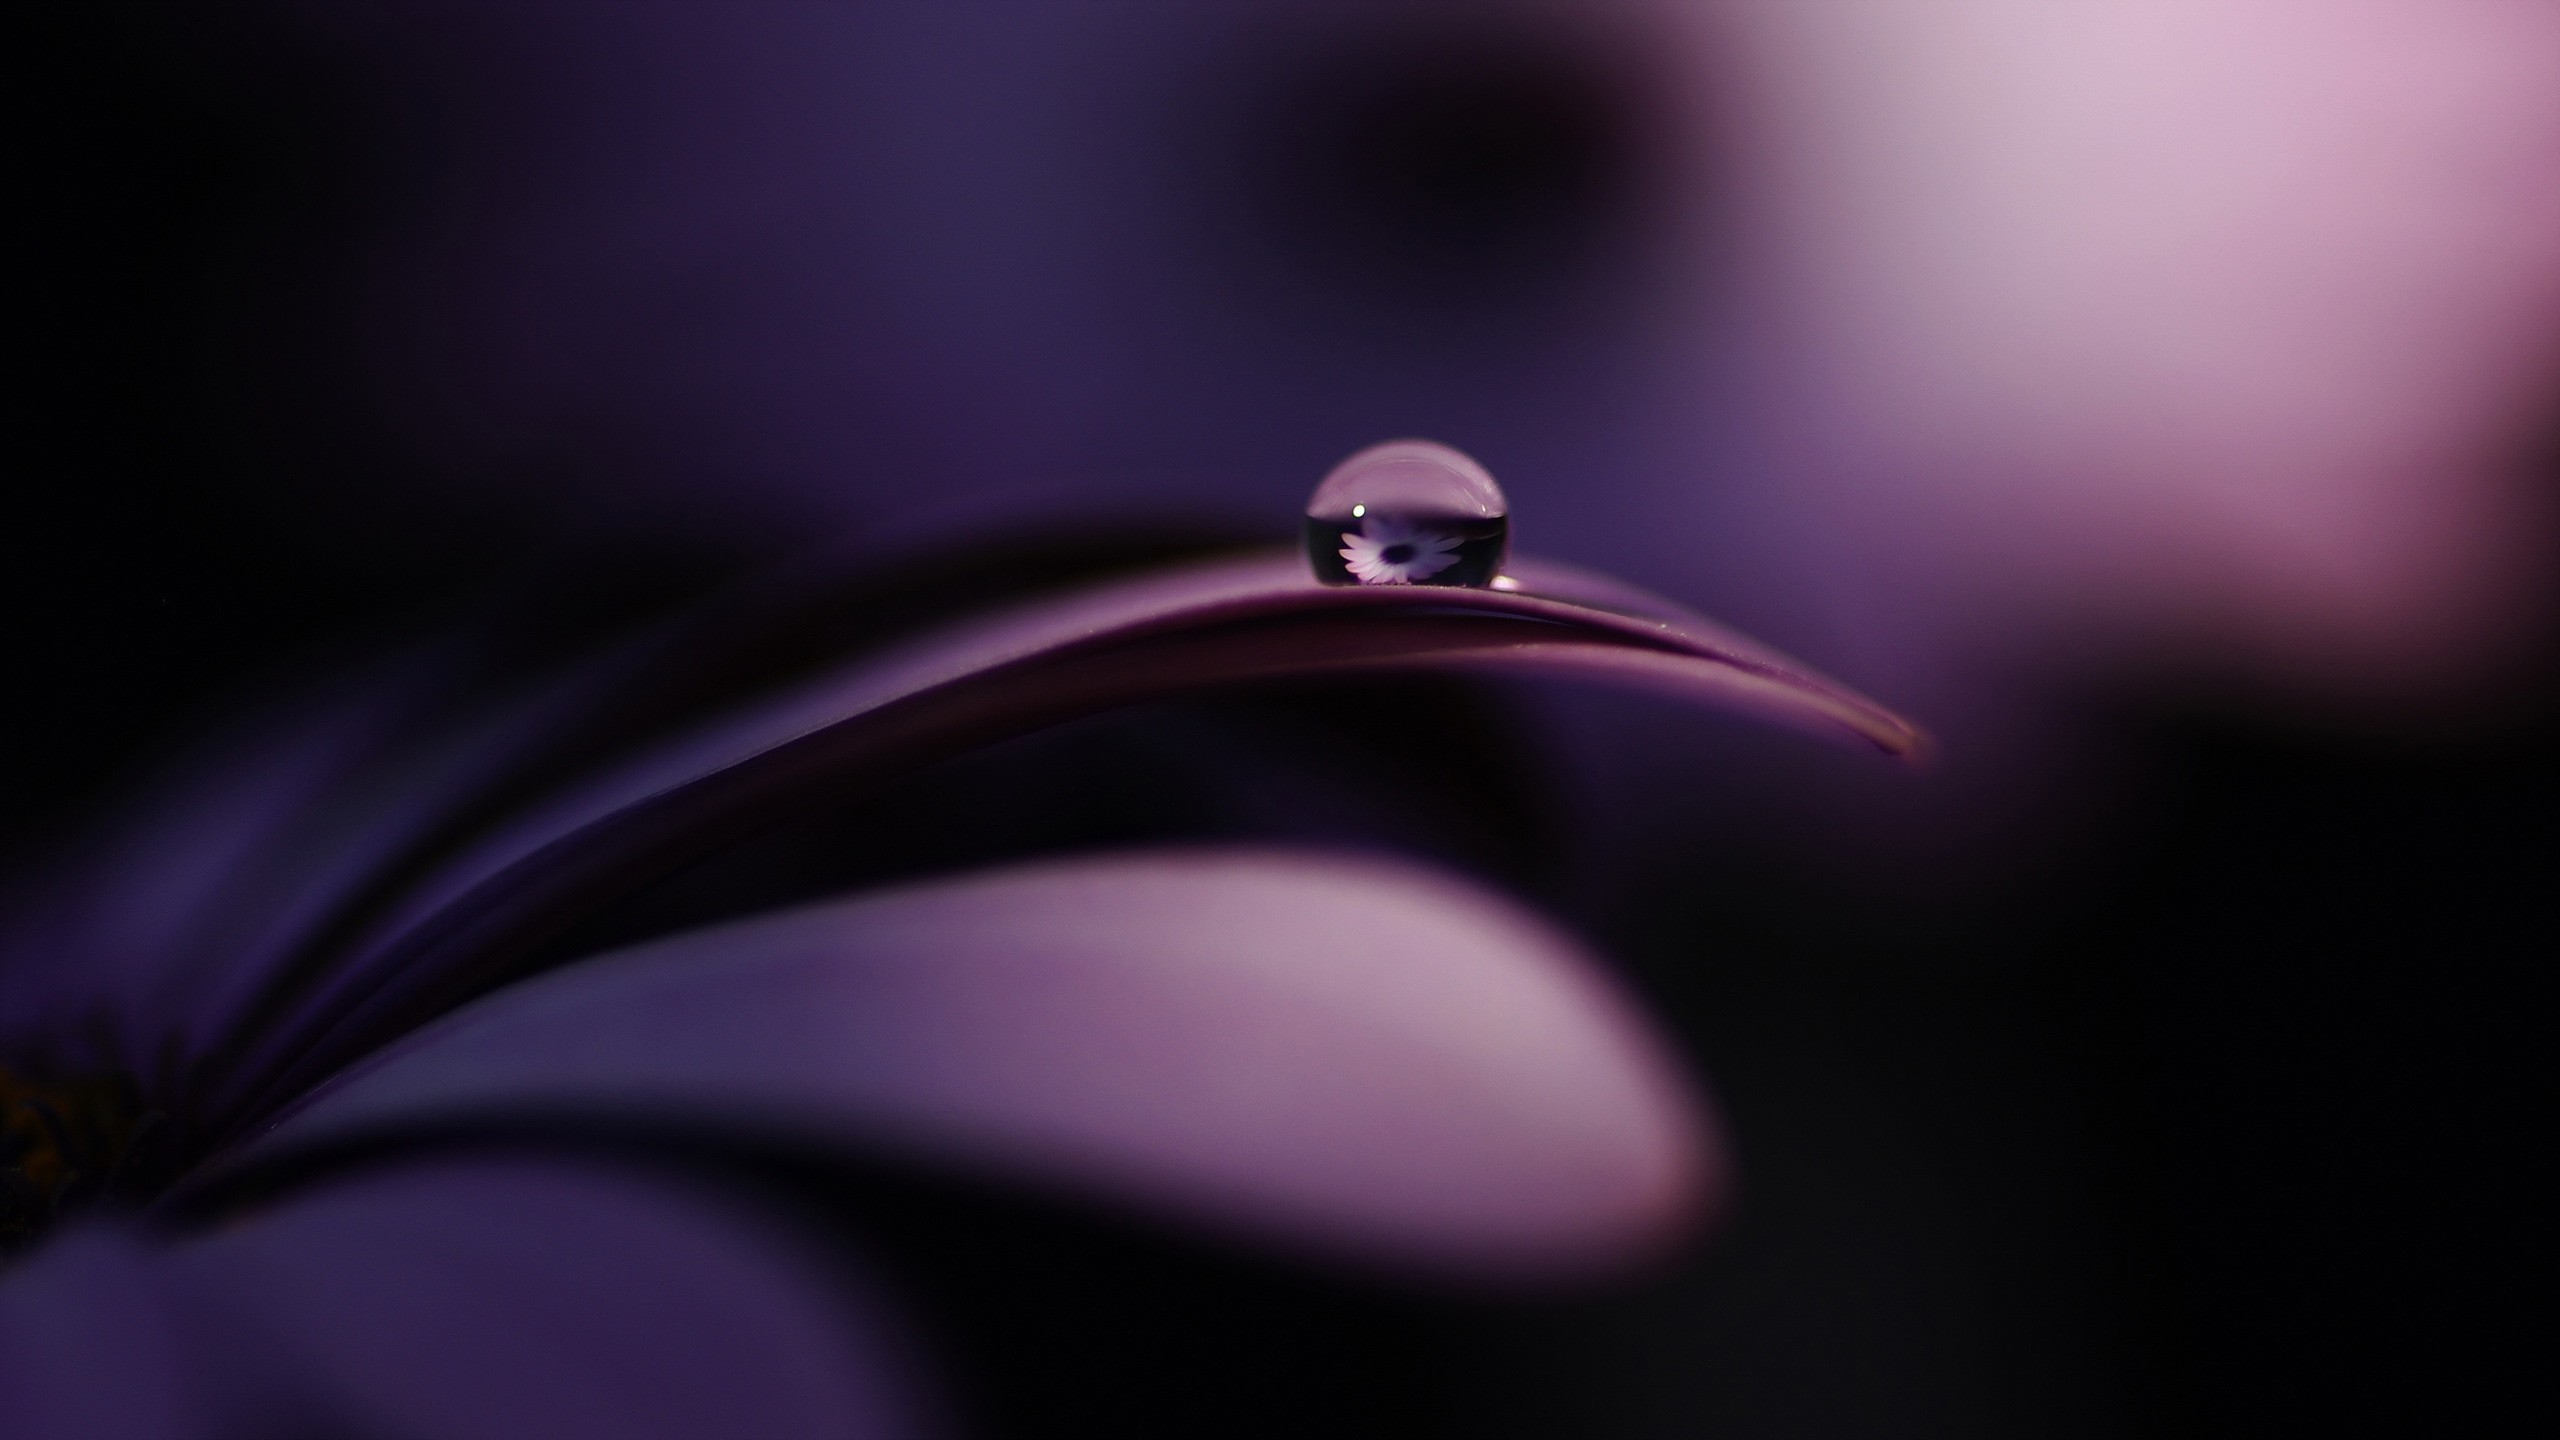 General 2560x1440 purple flowers water drops reflection purple plants closeup macro